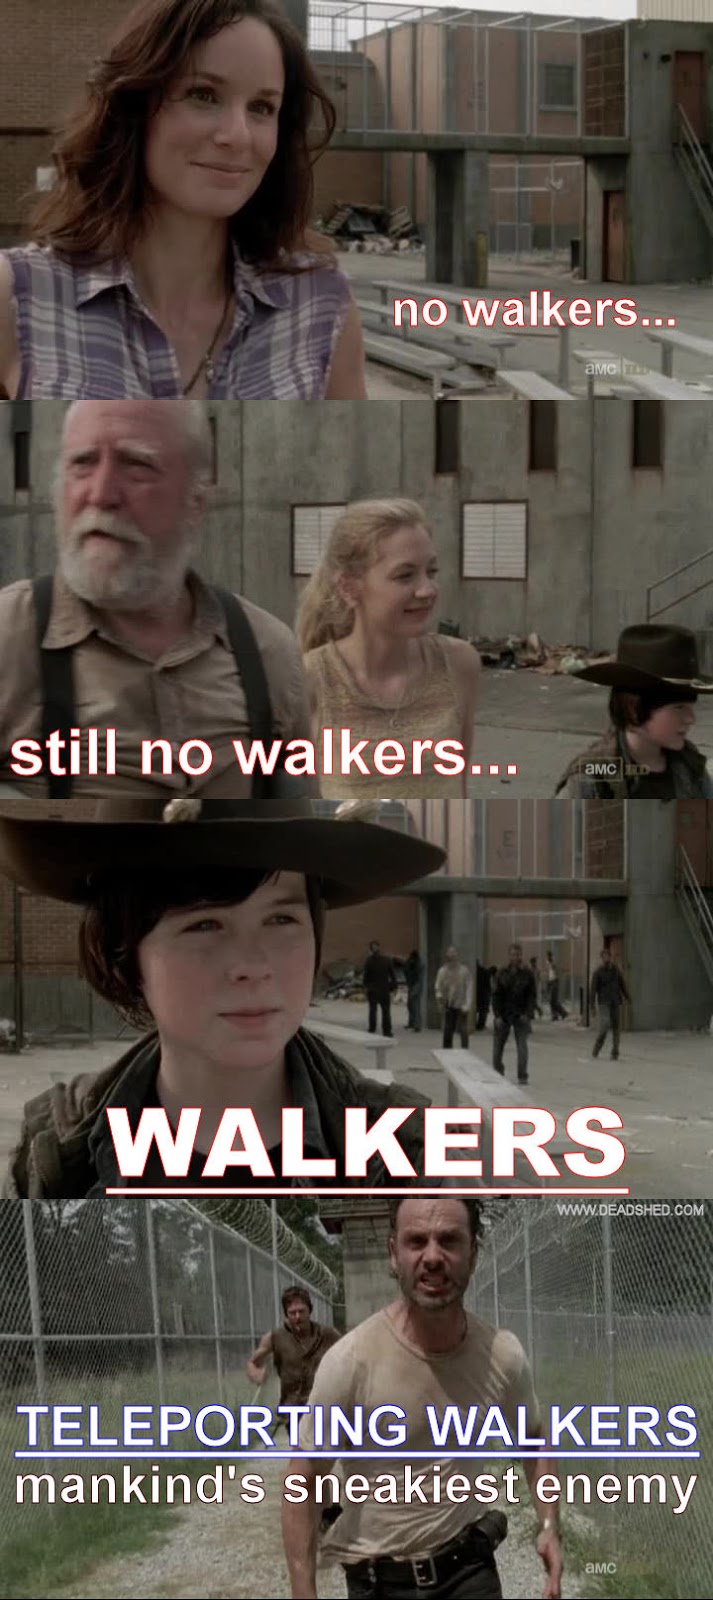 Image The Walking Dead Season 3 Teleporting Walkers Meme DeadShed